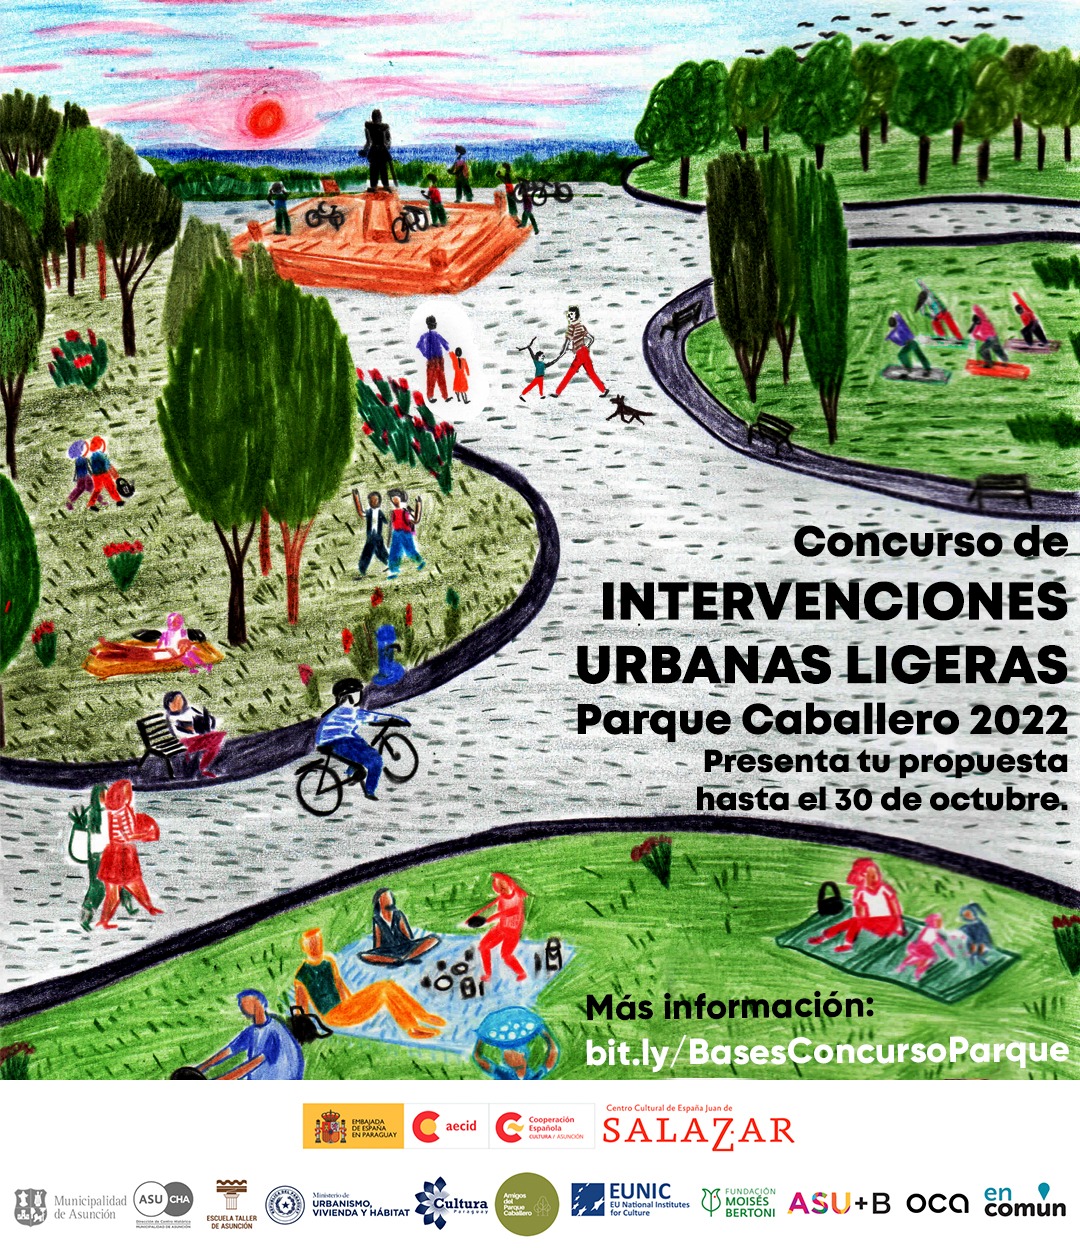 Concurso para revitalizar el Parque Caballero con intervenciones urbanas ligeras abierto hasta el 30 de octubre imagen